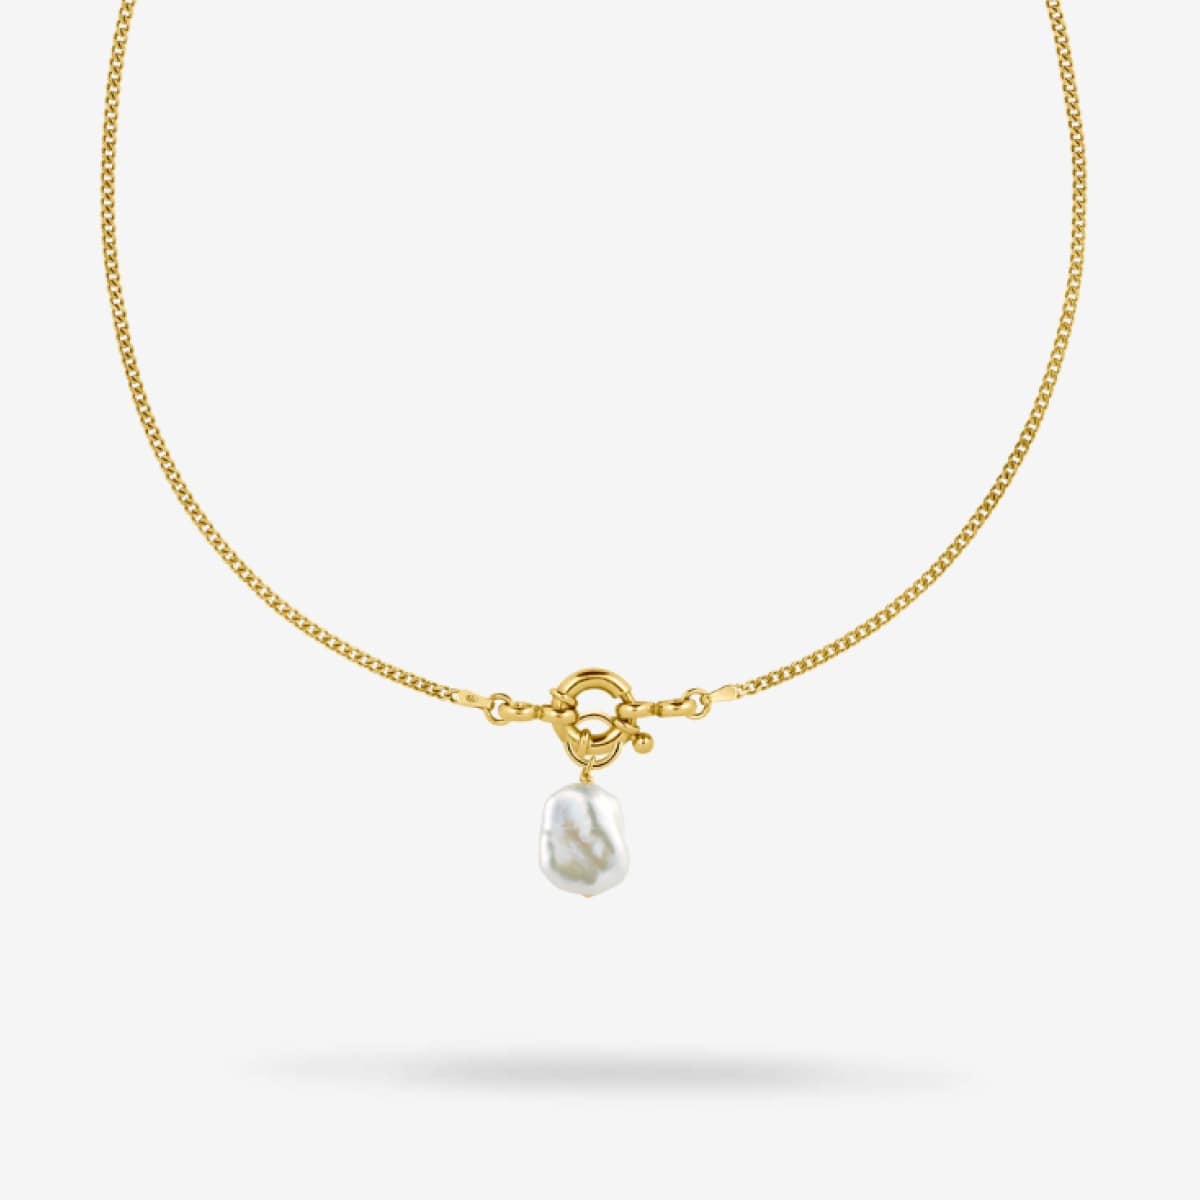 Medium Link + Big Closure + Keshi Pearl - Halsketten - 18k vergoldet